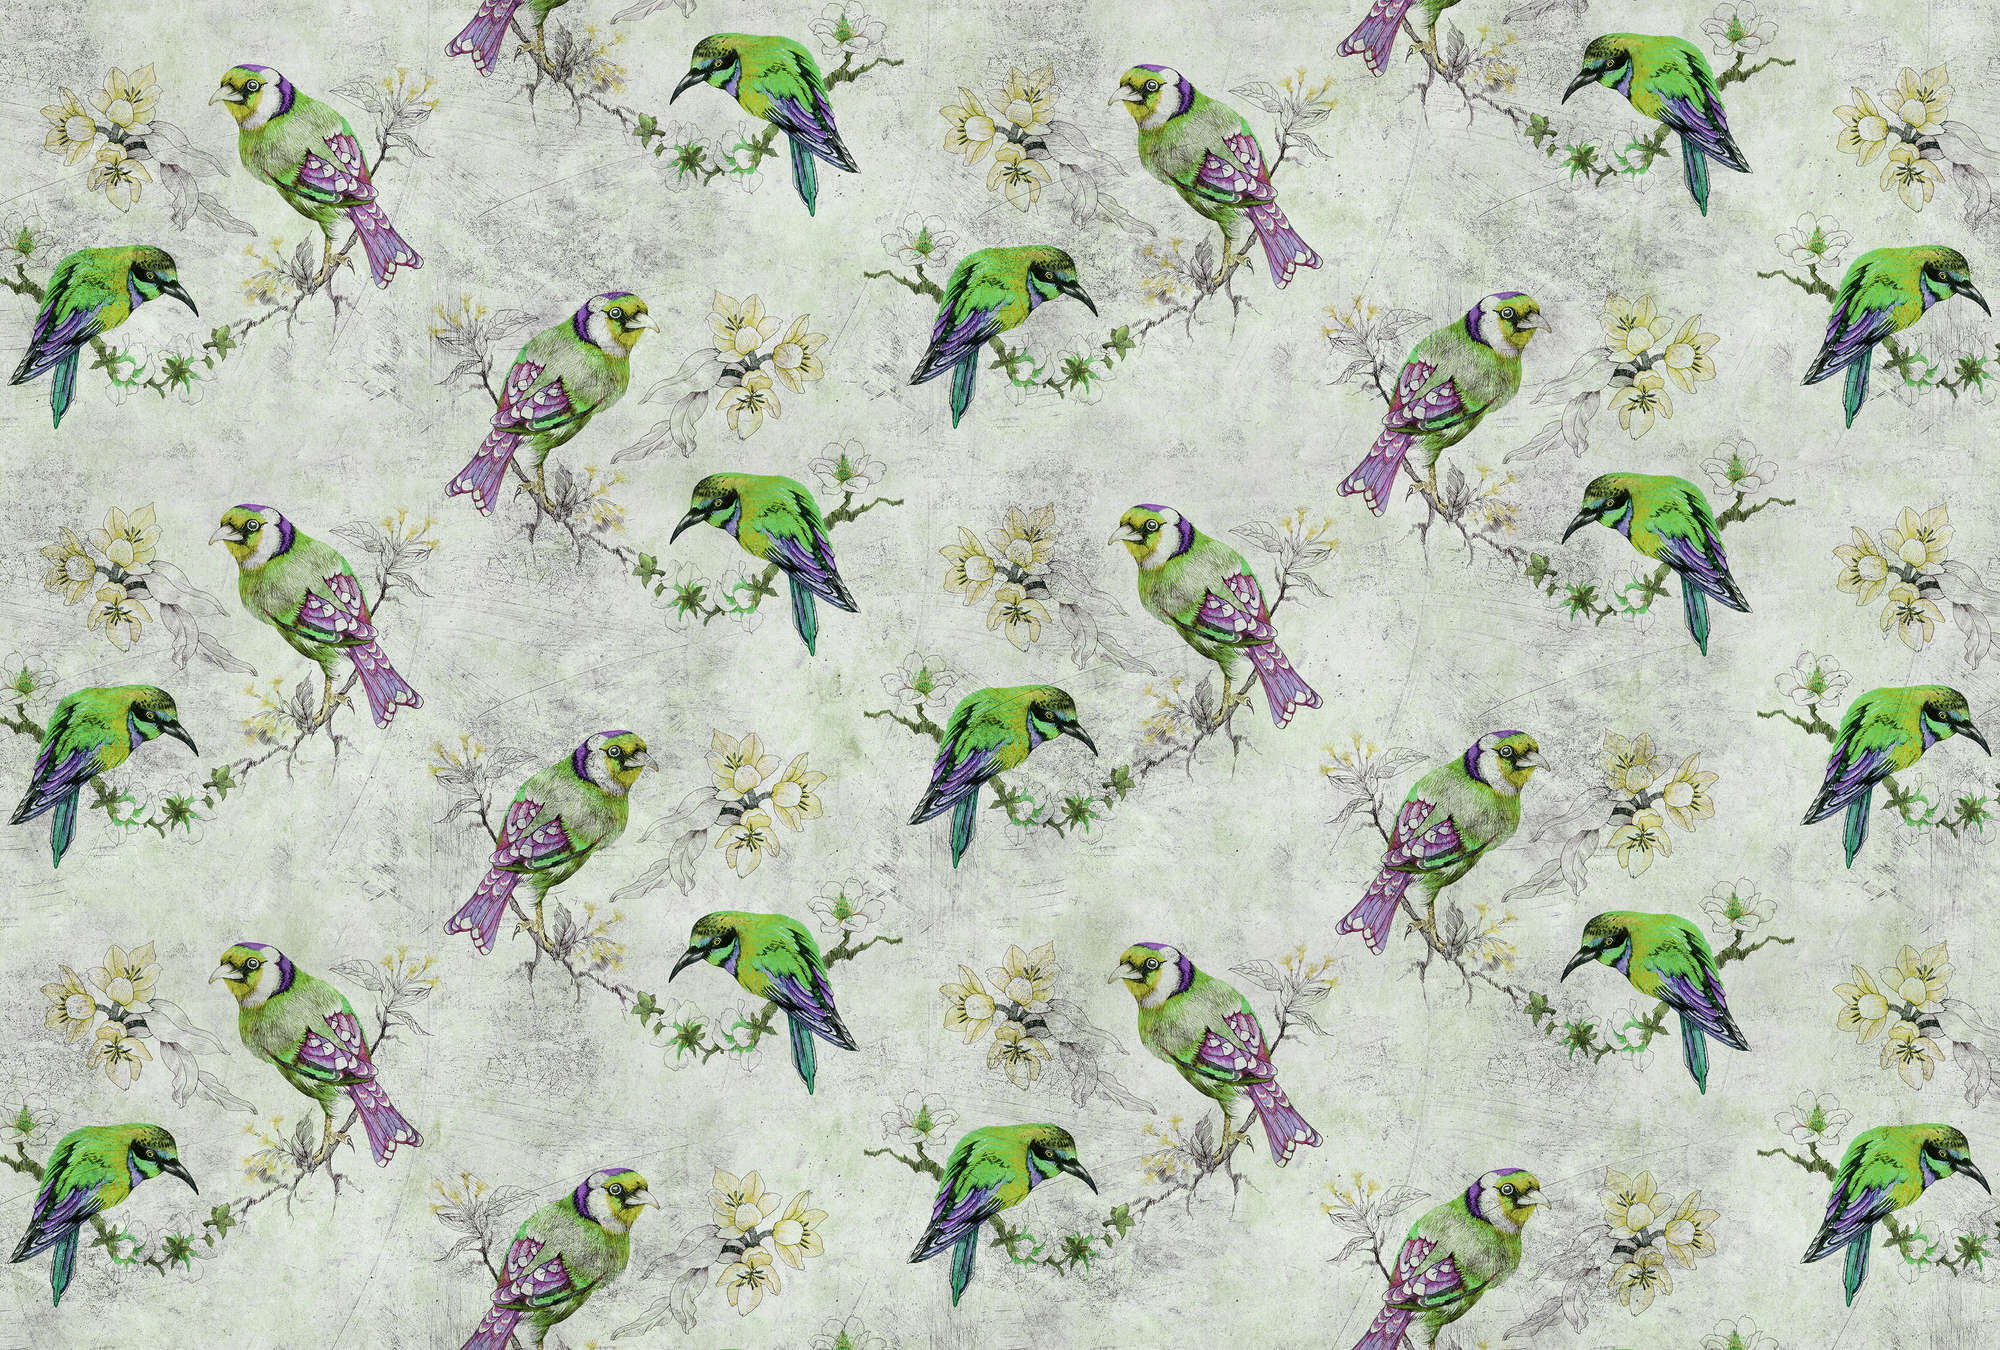             Love birds 2 - Bunte Fototapete in kratzer Struktur mit skizzierten Vögeln – Grau, Grün | Struktur Vlies
        